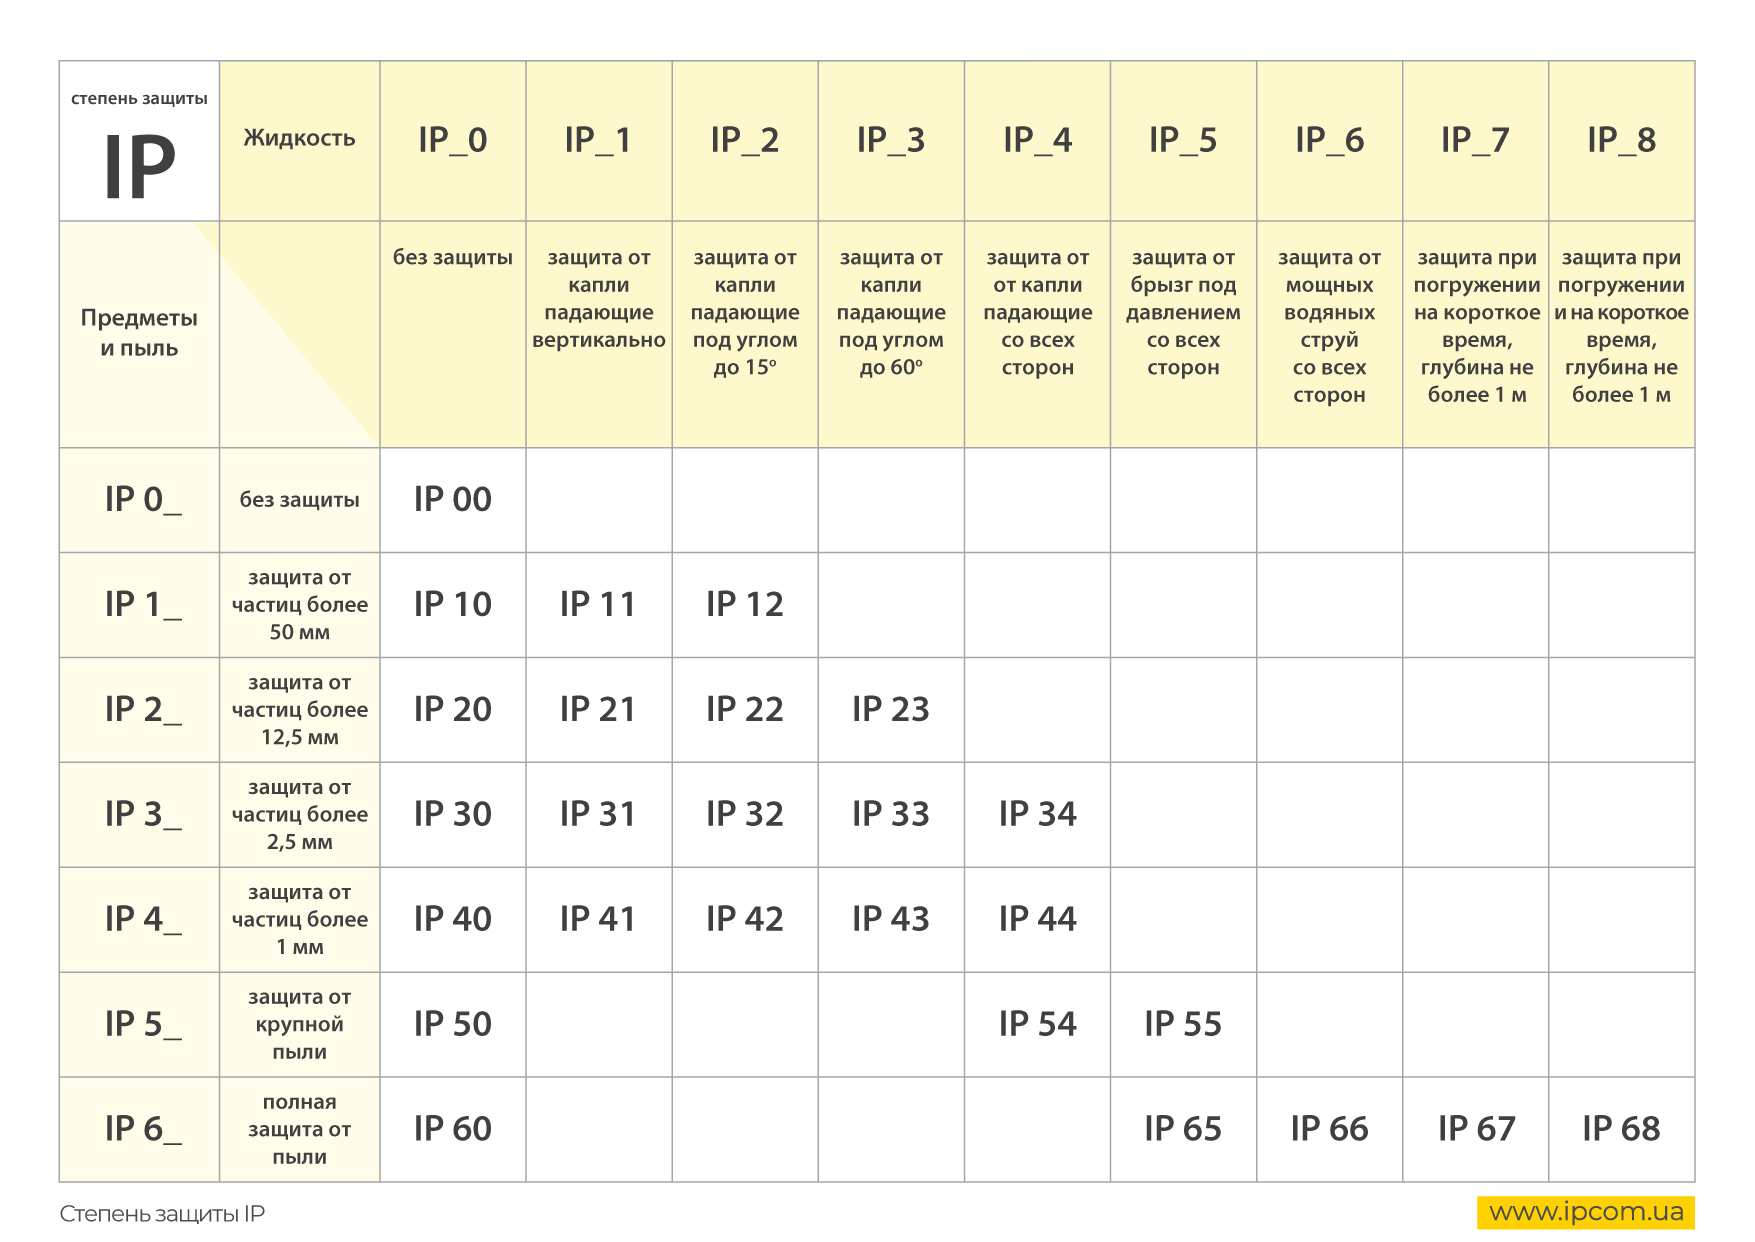 Классы защиты ip приборов от влаги и пыли. таблица расшифровки